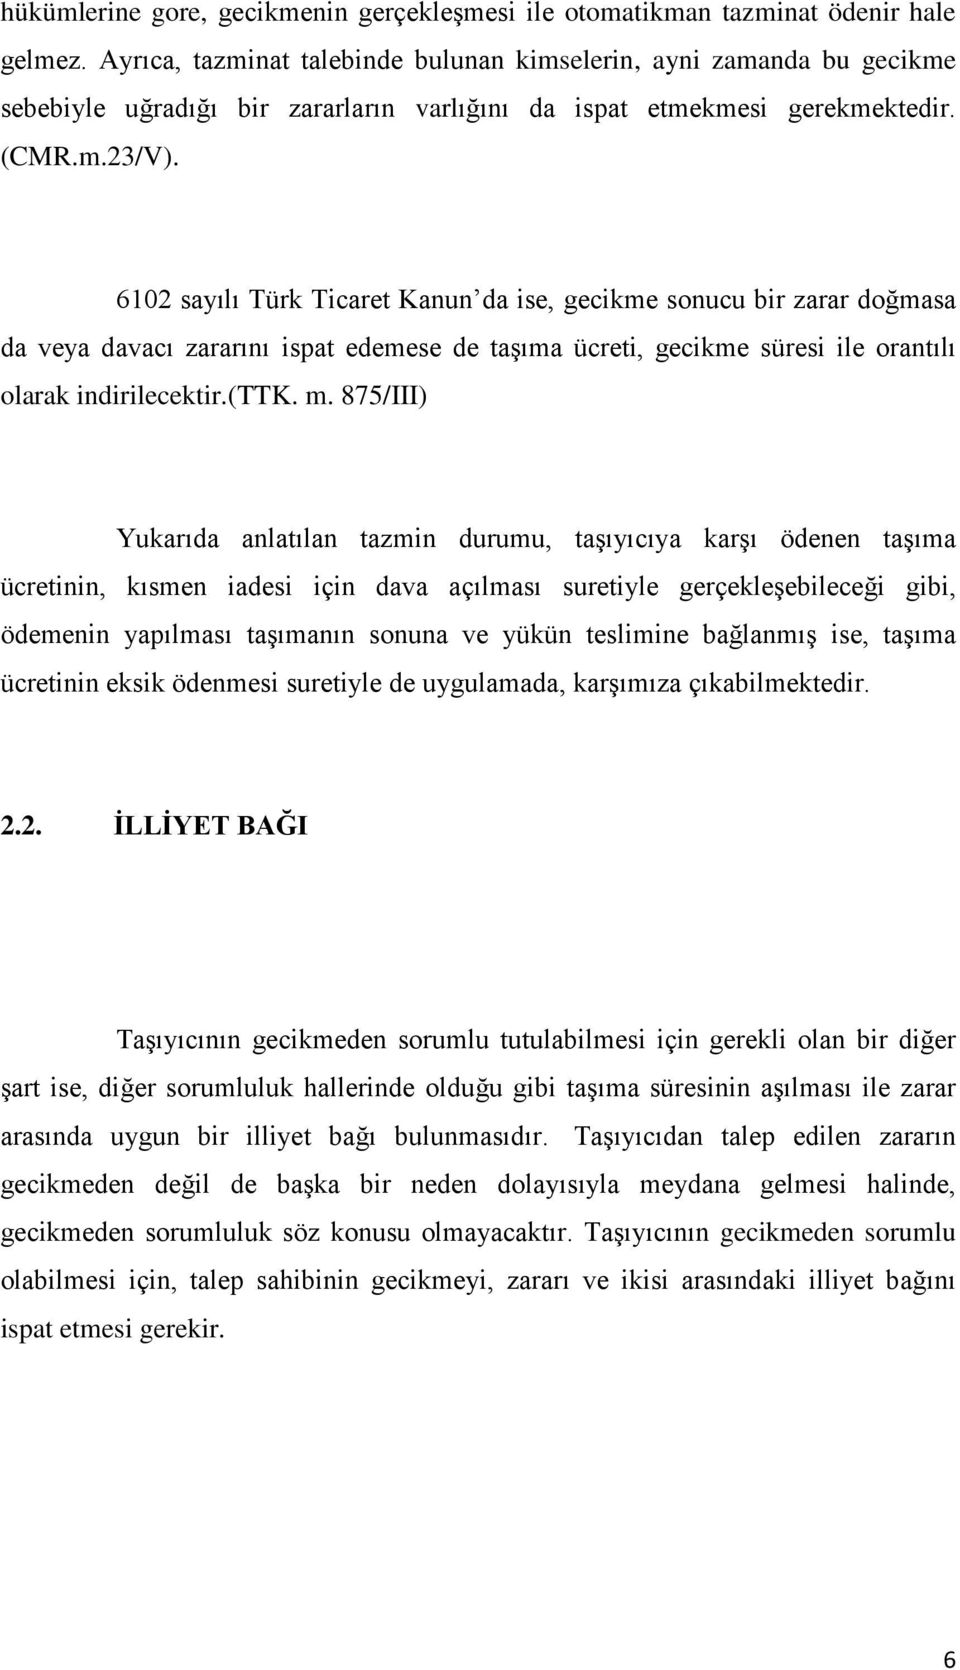 6102 sayılı Türk Ticaret Kanun da ise, gecikme sonucu bir zarar doğmasa da veya davacı zararını ispat edemese de taşıma ücreti, gecikme süresi ile orantılı olarak indirilecektir.(ttk. m.